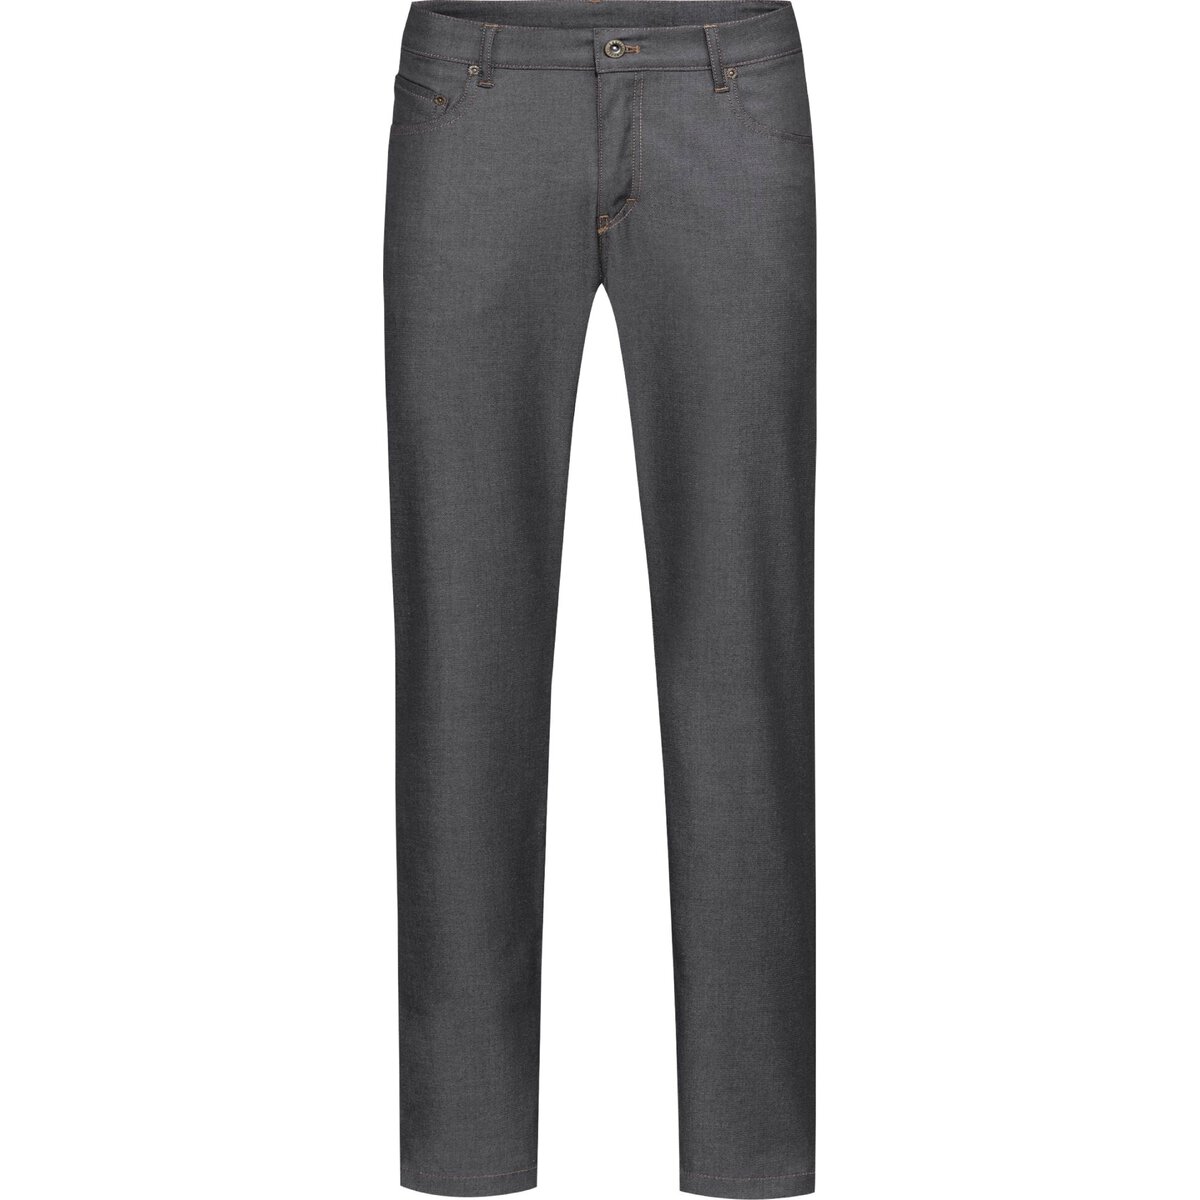 Herren Kochhose Jeans Style Größe 46 (1)